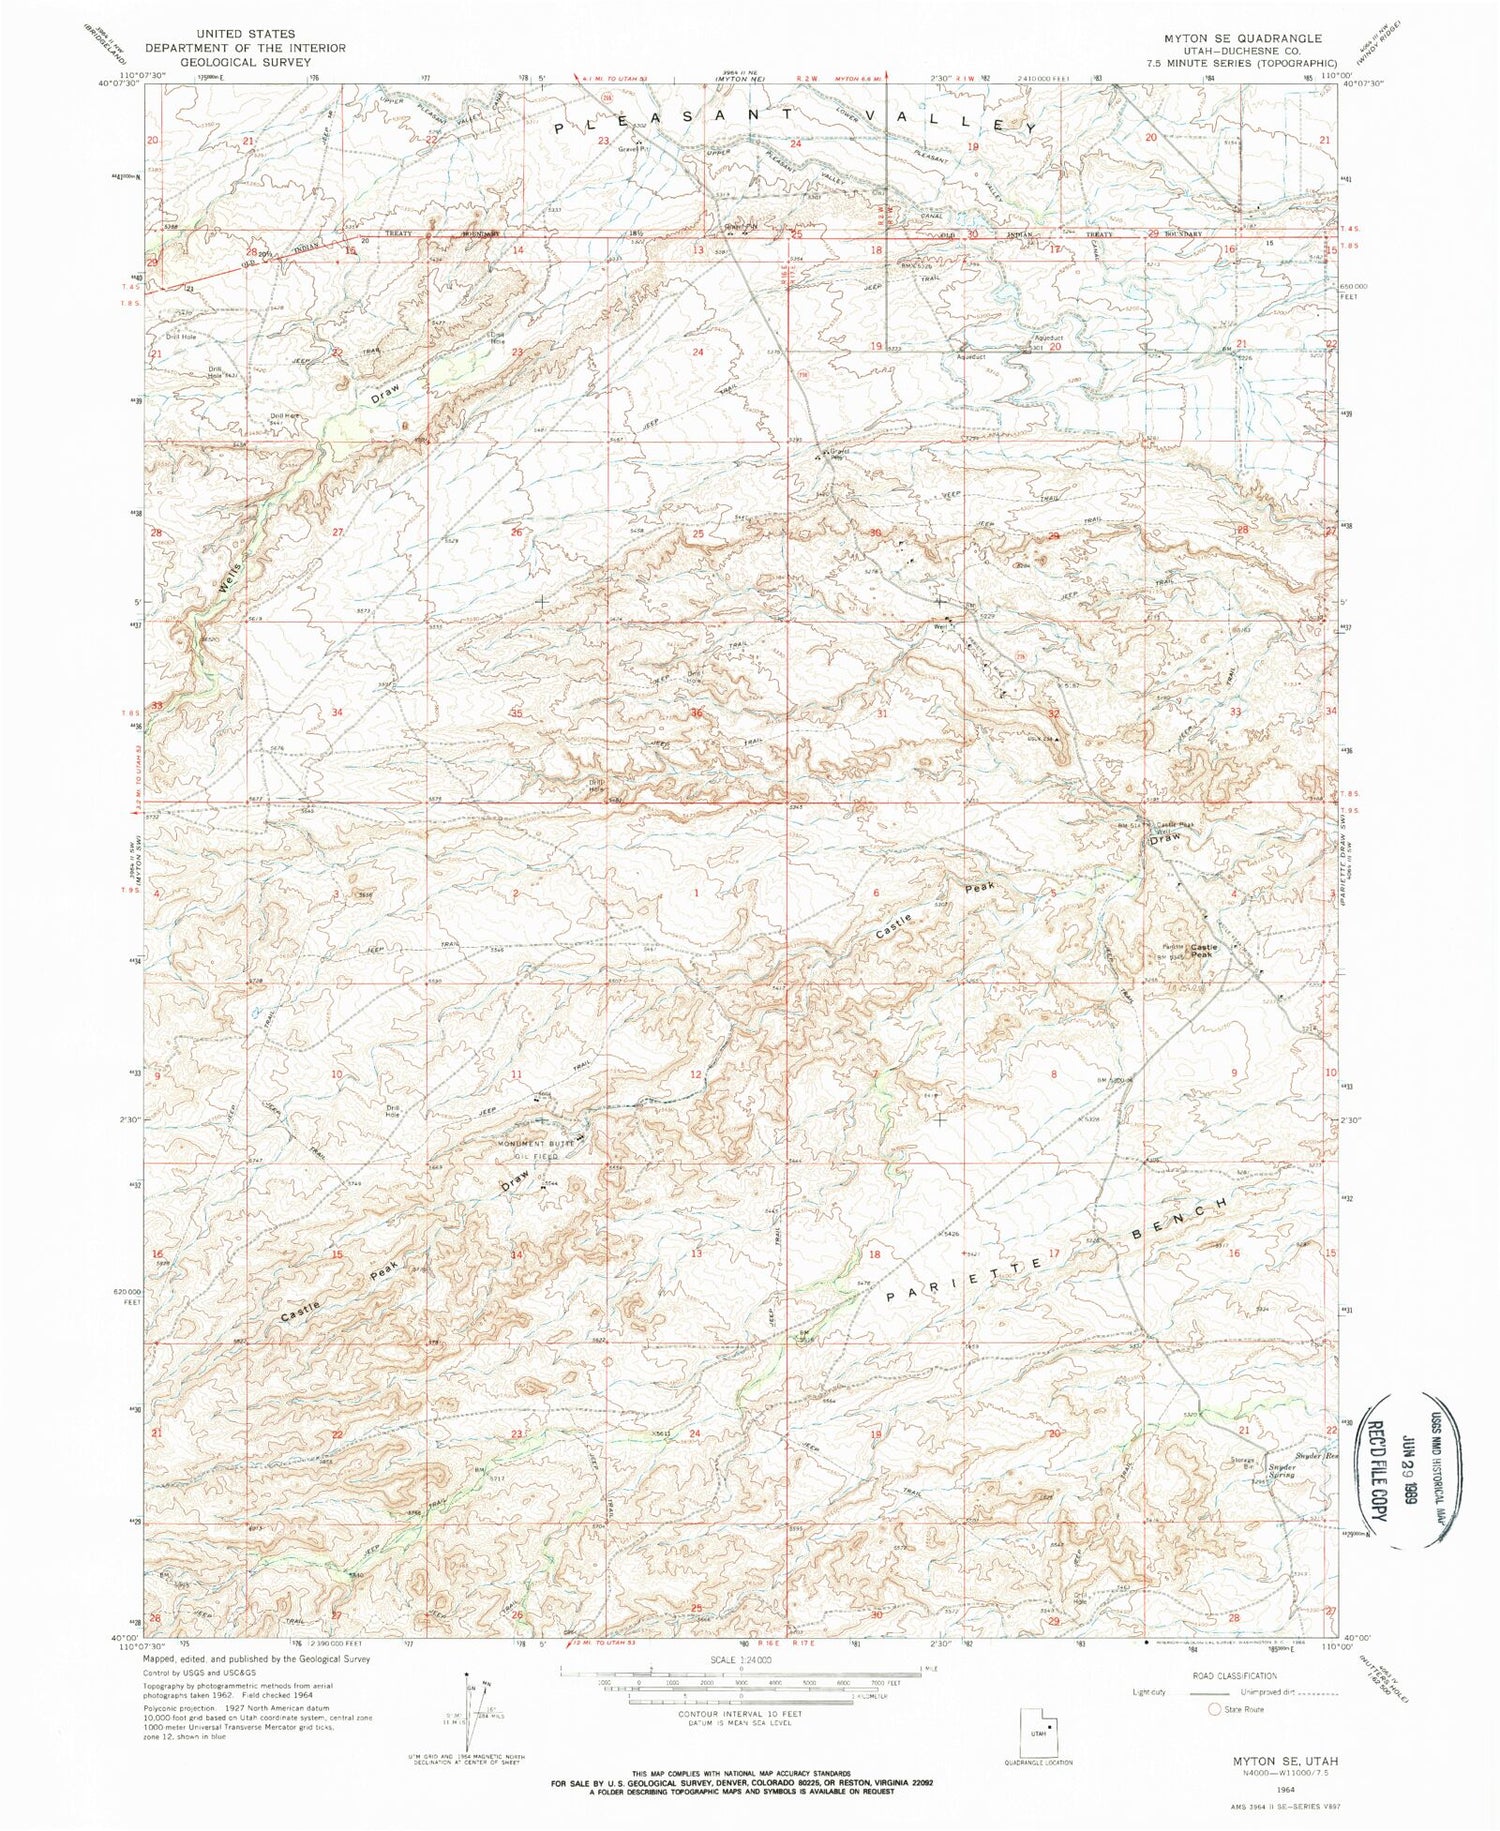 Classic USGS Myton SE Utah 7.5'x7.5' Topo Map Image